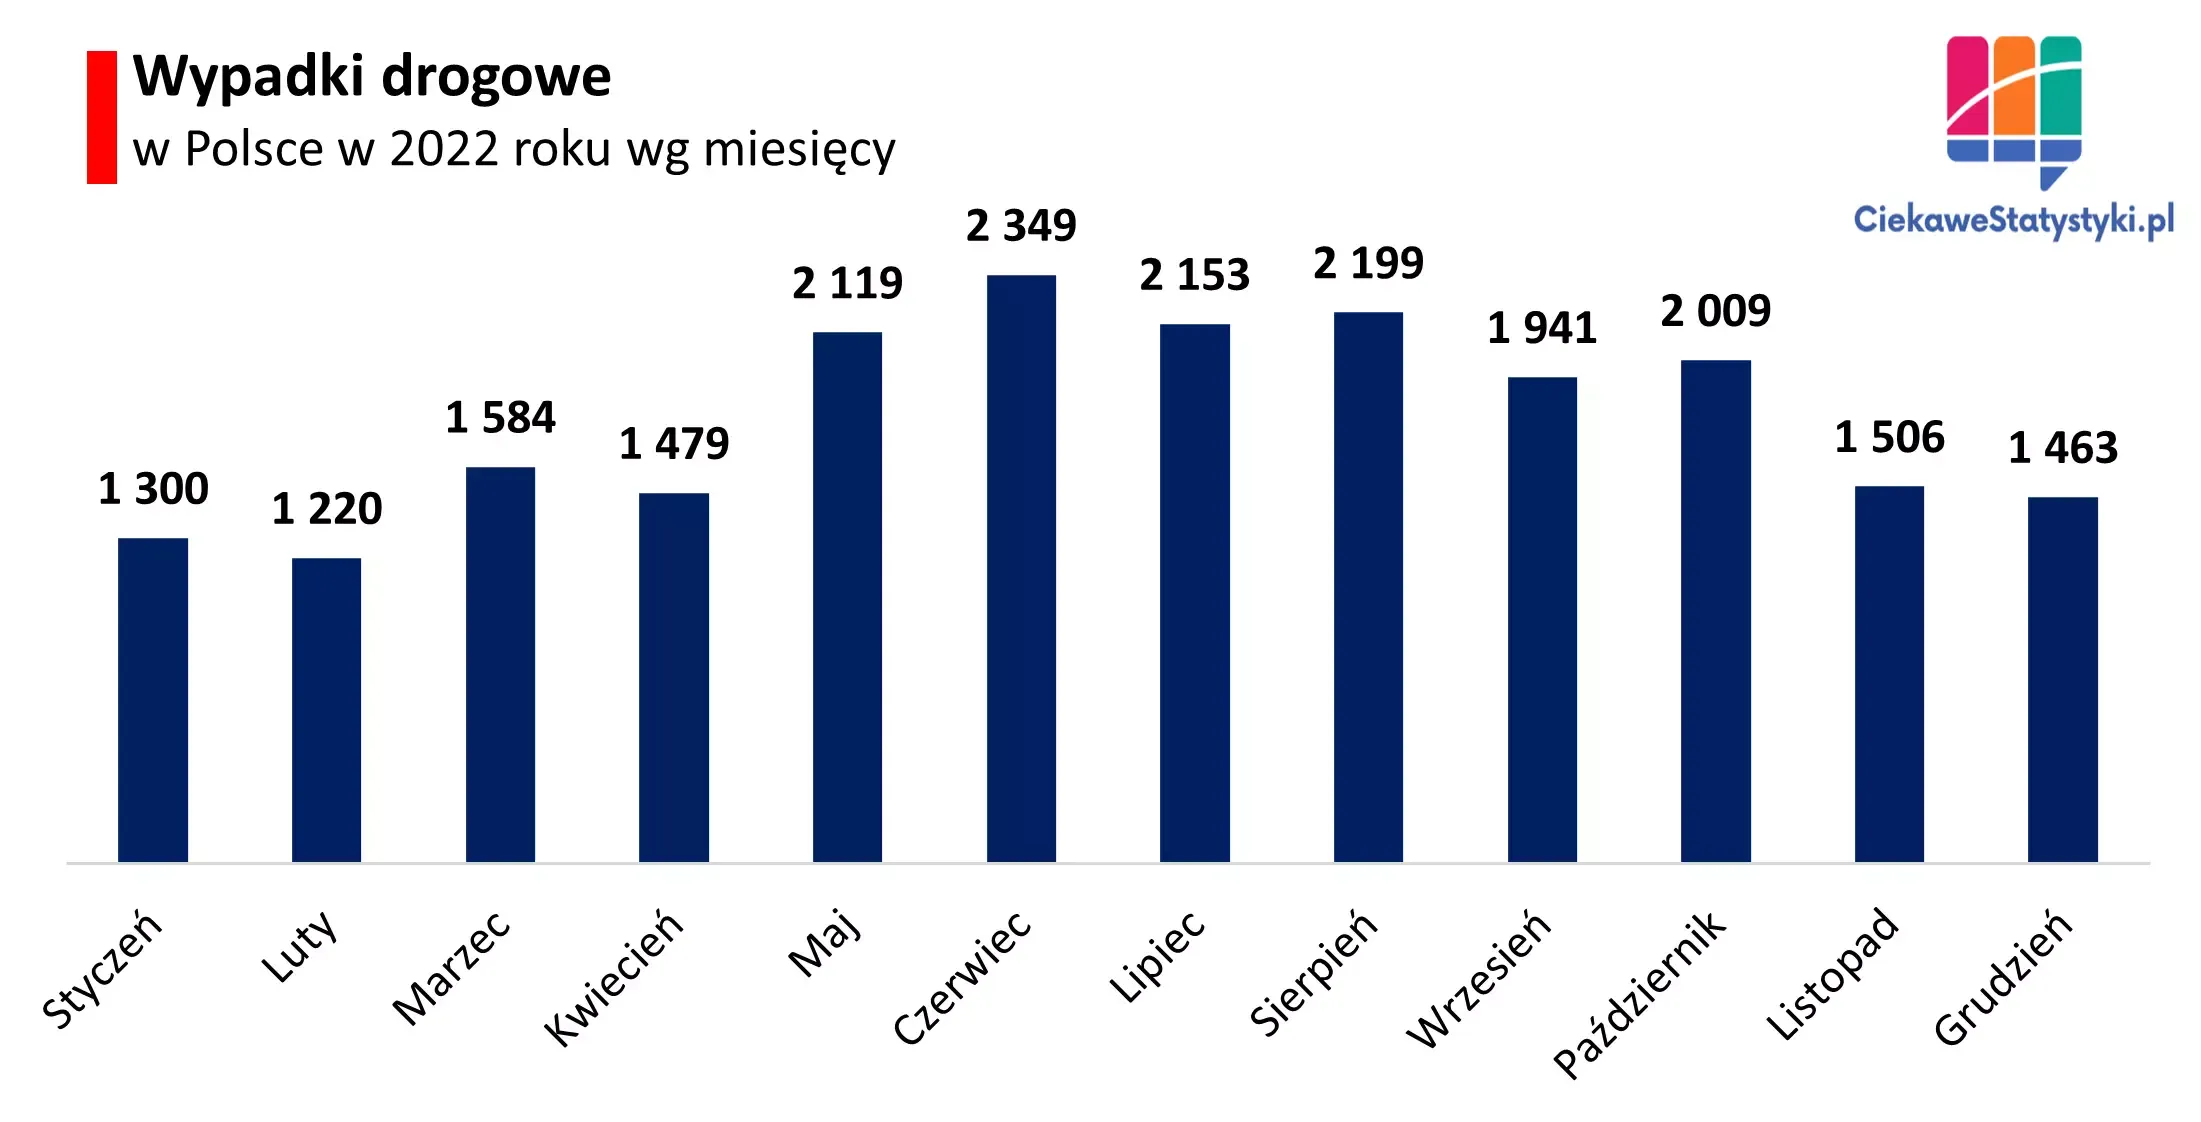 Wykres prezentuje ilość wypadków drogowych w Polsce wg miesięcy